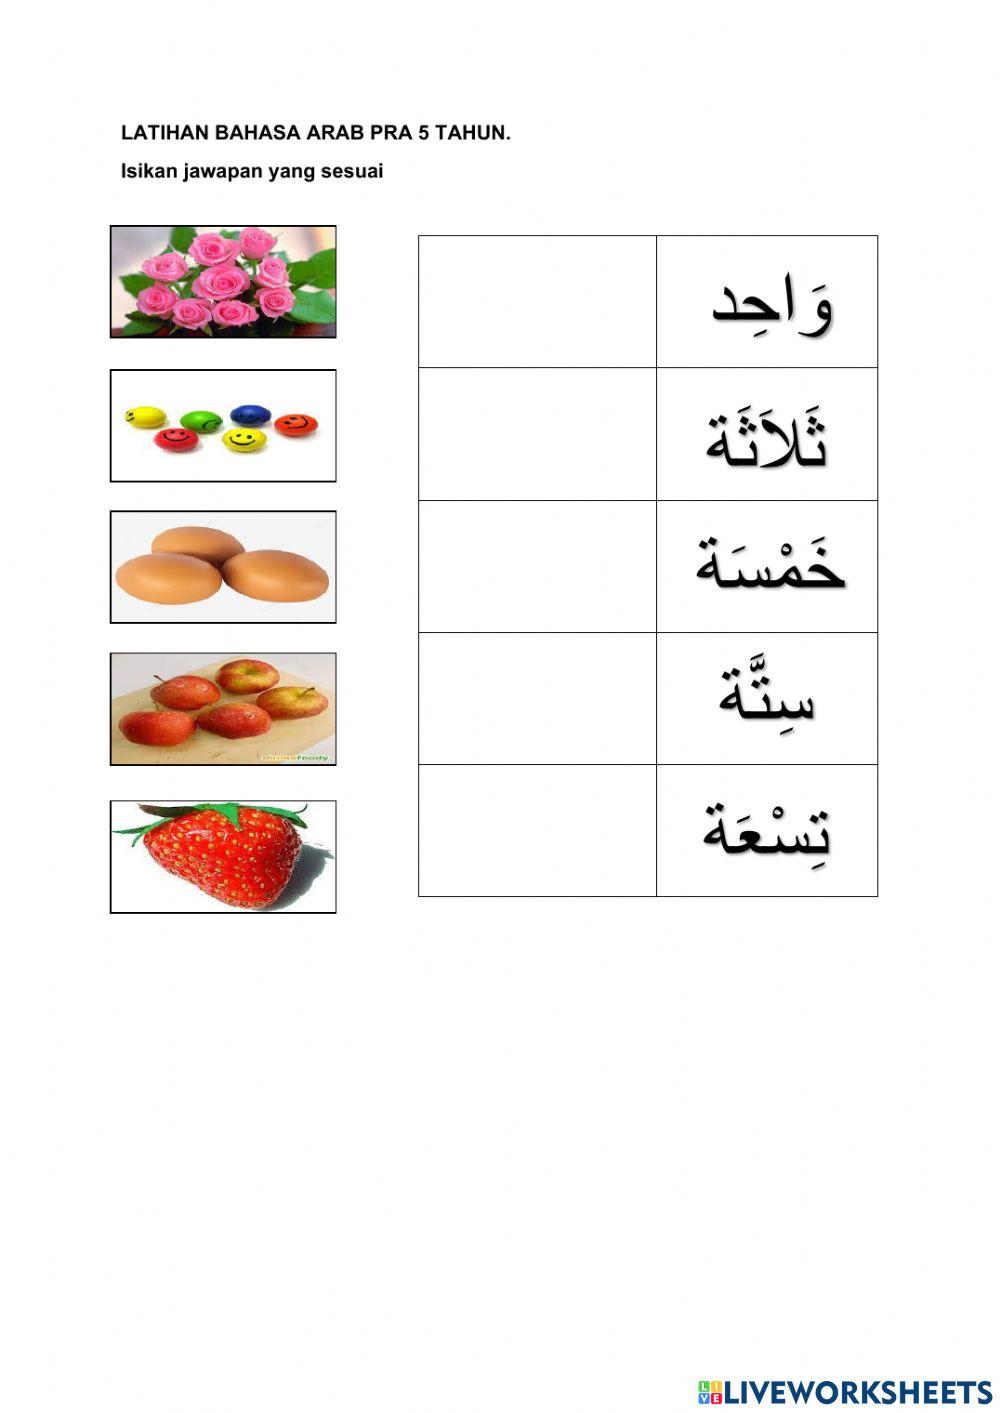 Latihan bahasa arab pra 5 tahun